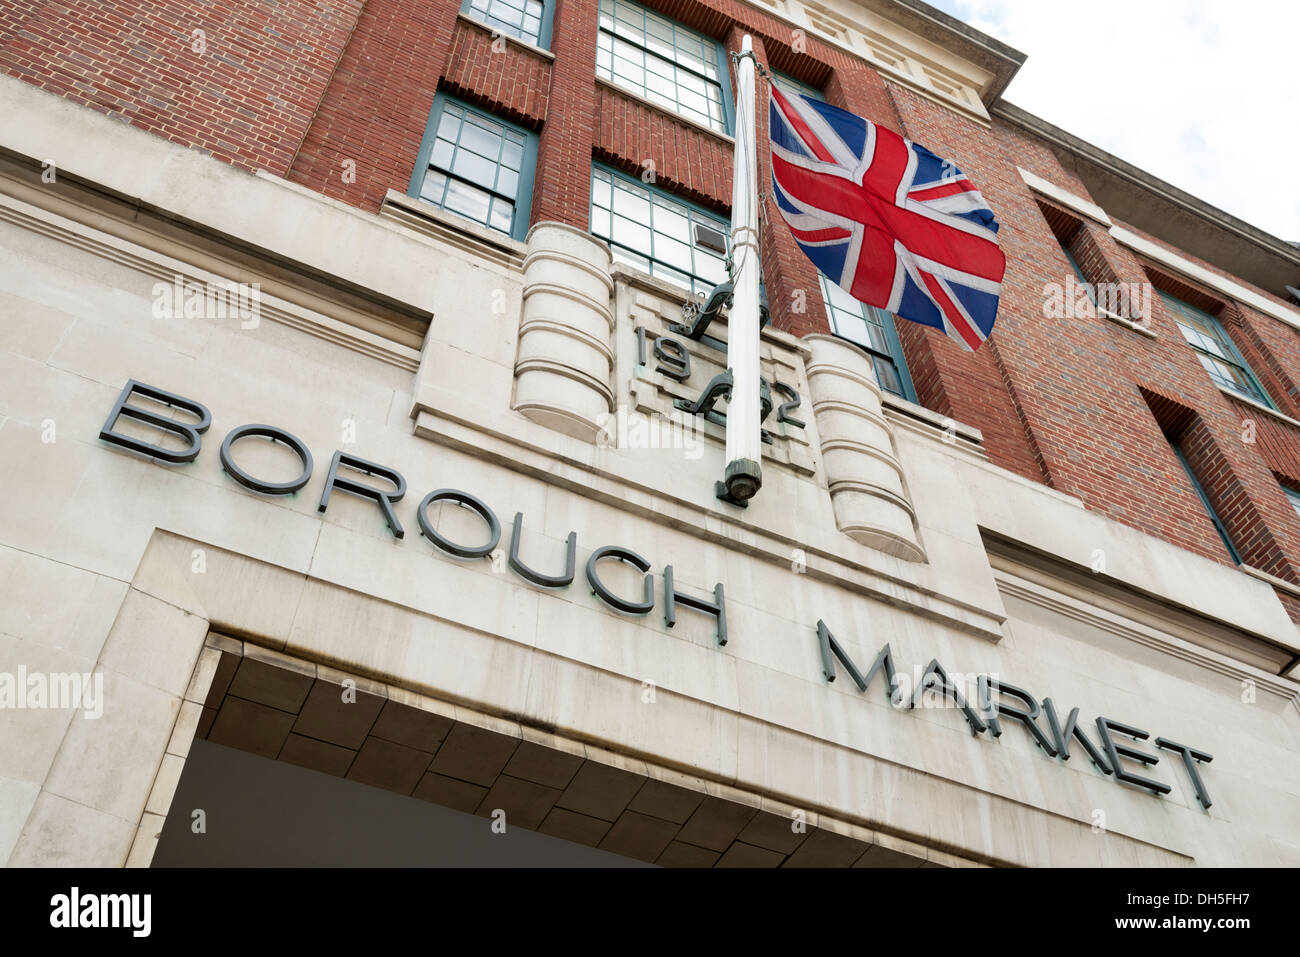 Borough Market entrance, London, England, UK Stock Photo